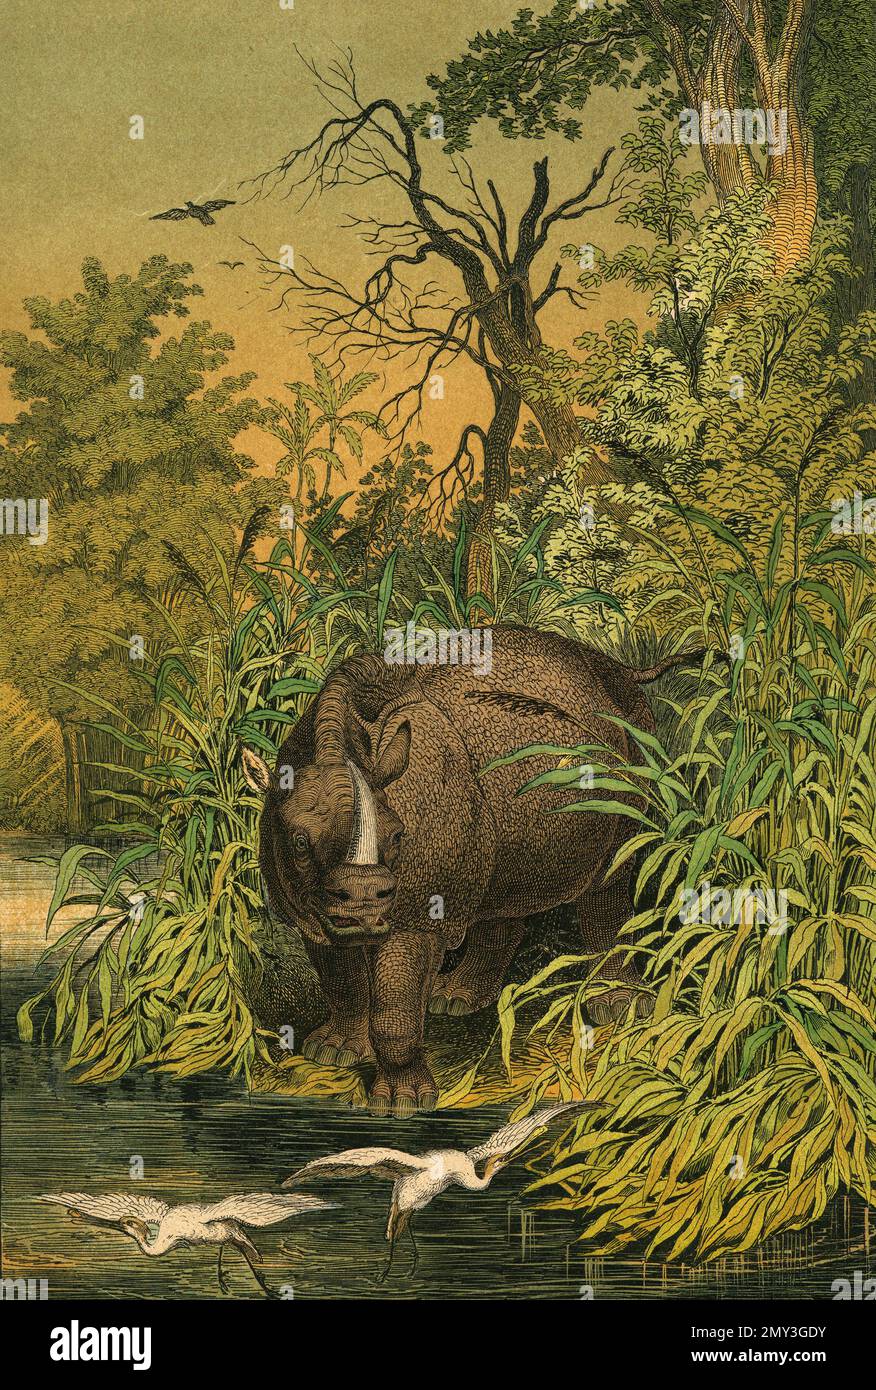 La vie animale dans les Indes orientales : Rhinosceros indien et oiseau blanc à bec blanc, illustration de couleur, le livre d'images instructif d'Adam White, 1868 Banque D'Images